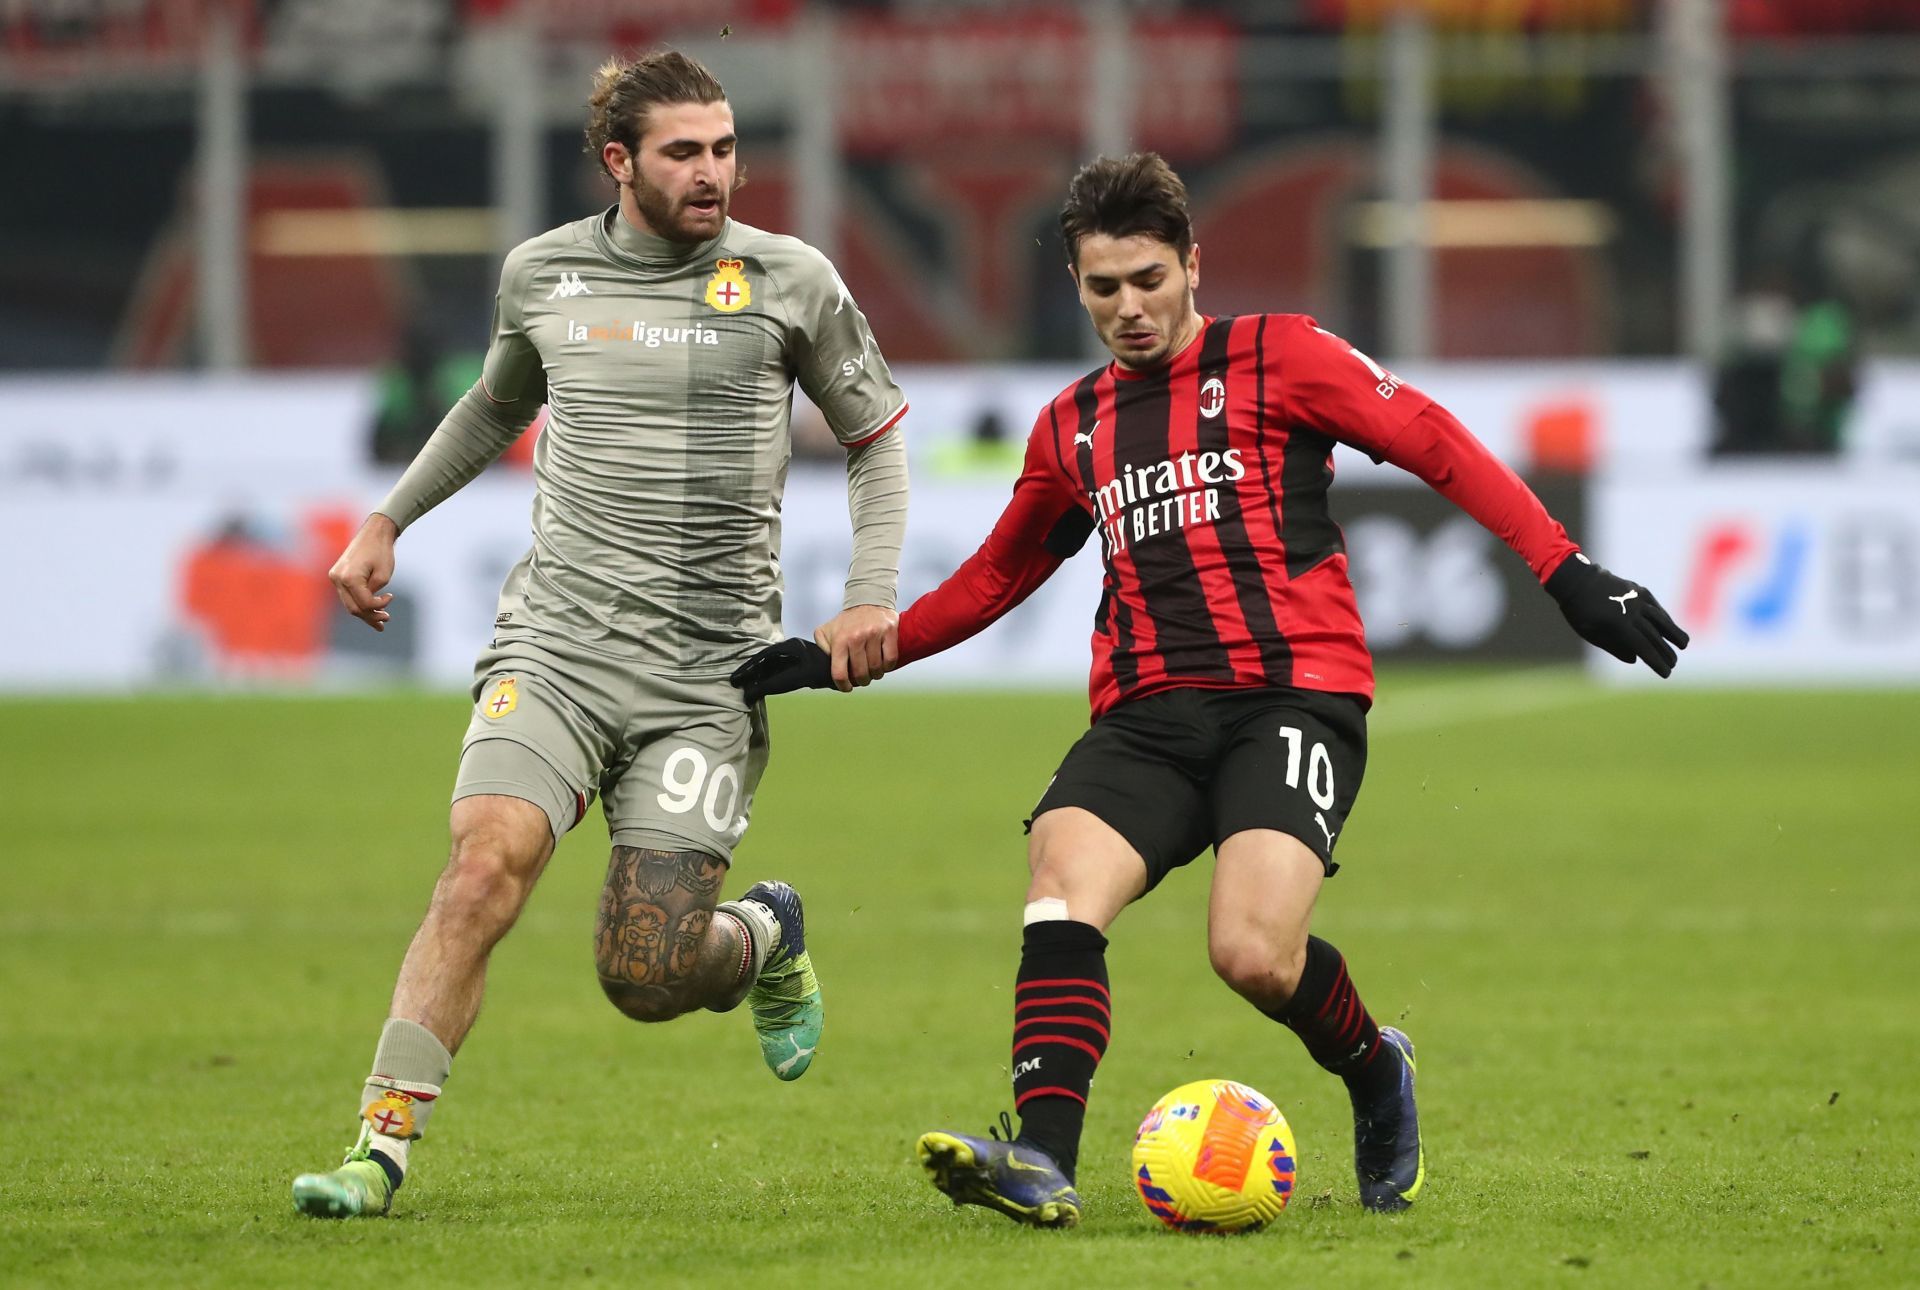 AC Milan take on Genoa this weekend